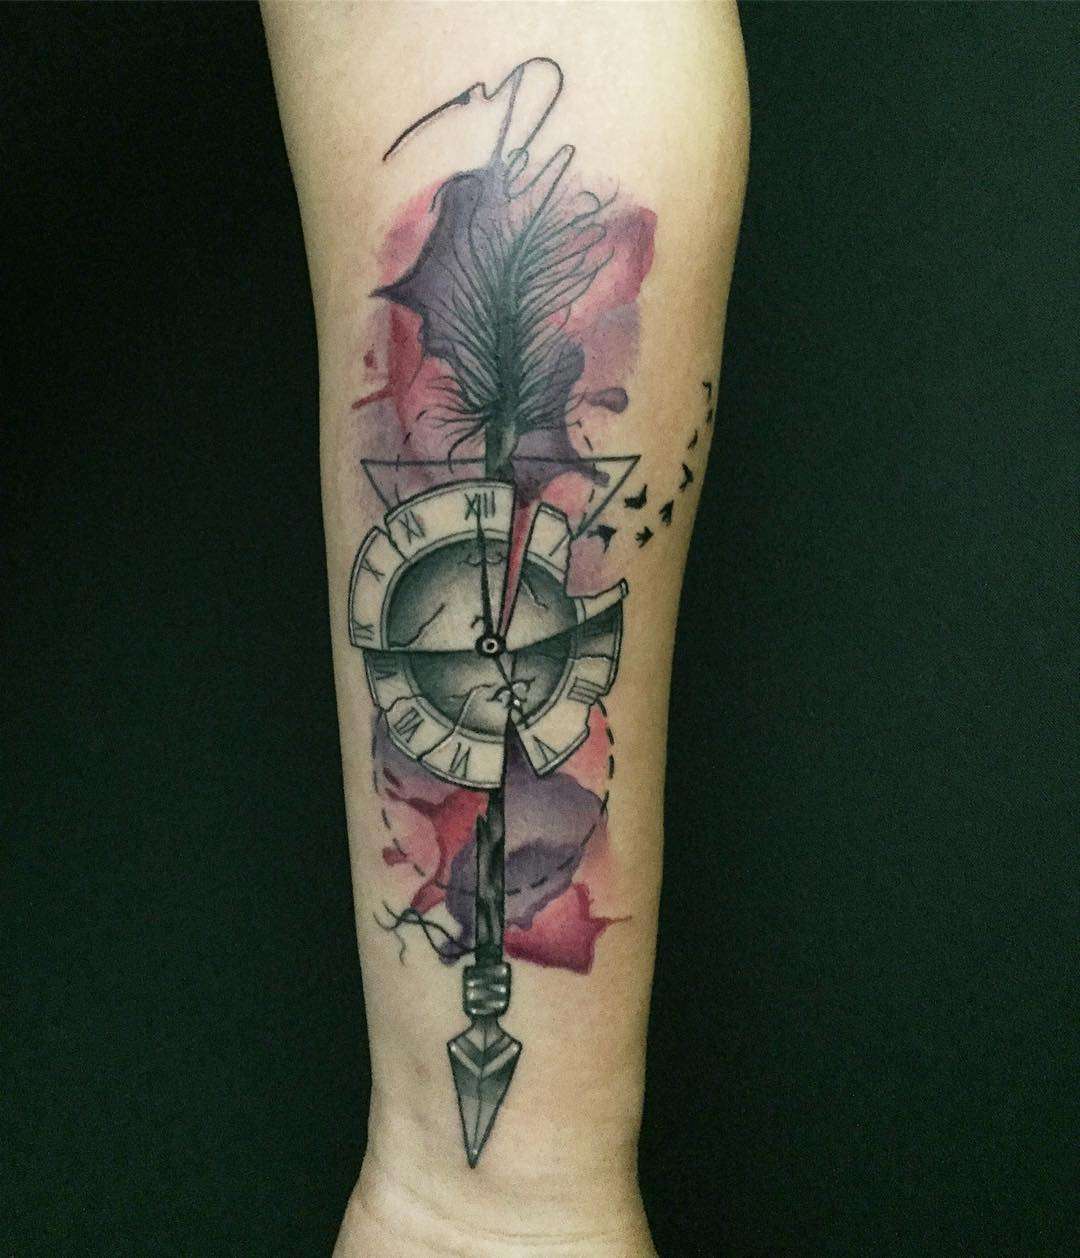 Tatuaje de flecha y reloj